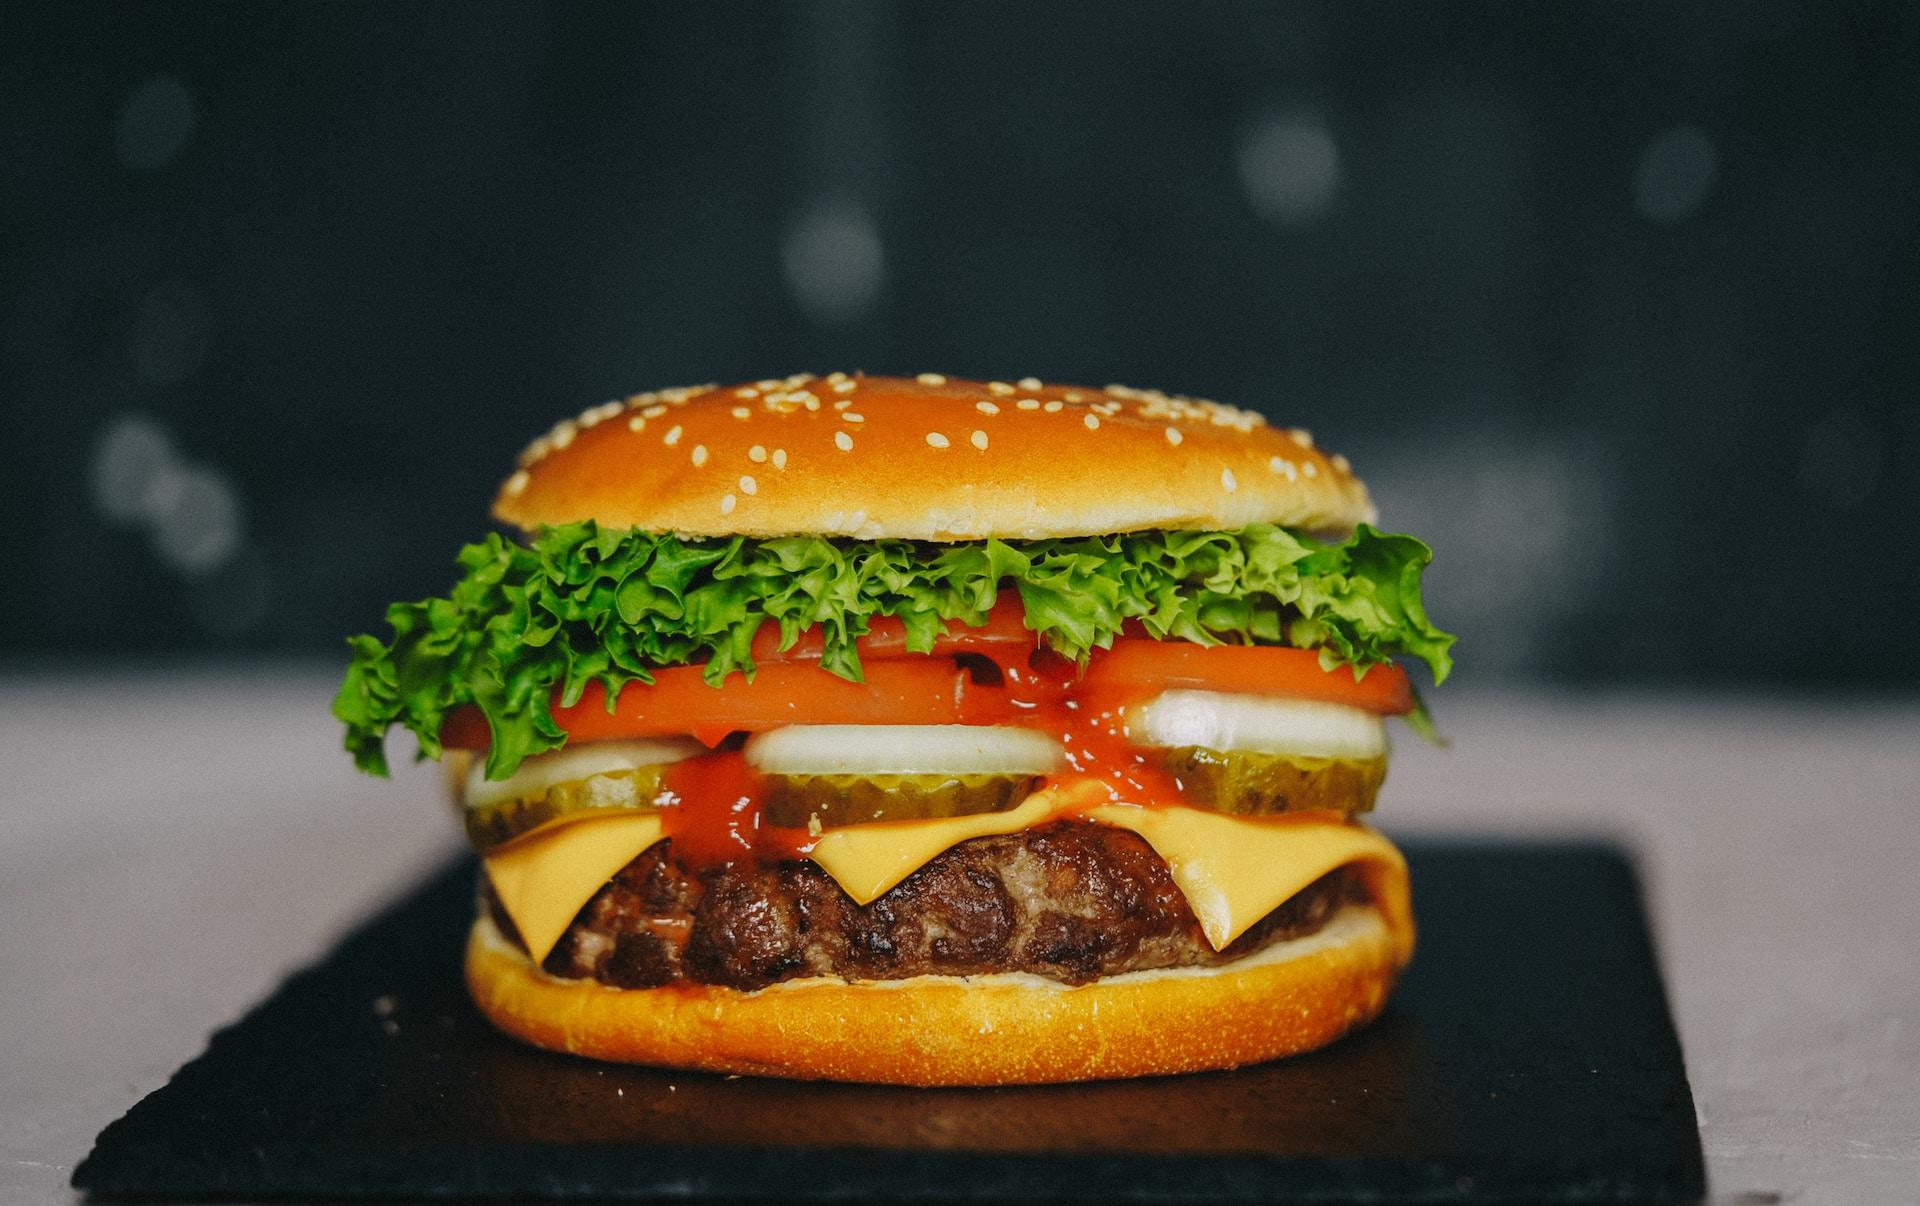 细胞肉初创「Clever Carnivore」获700万美元融资，要把汉堡价格降到1美元-艾格农业投融资平台